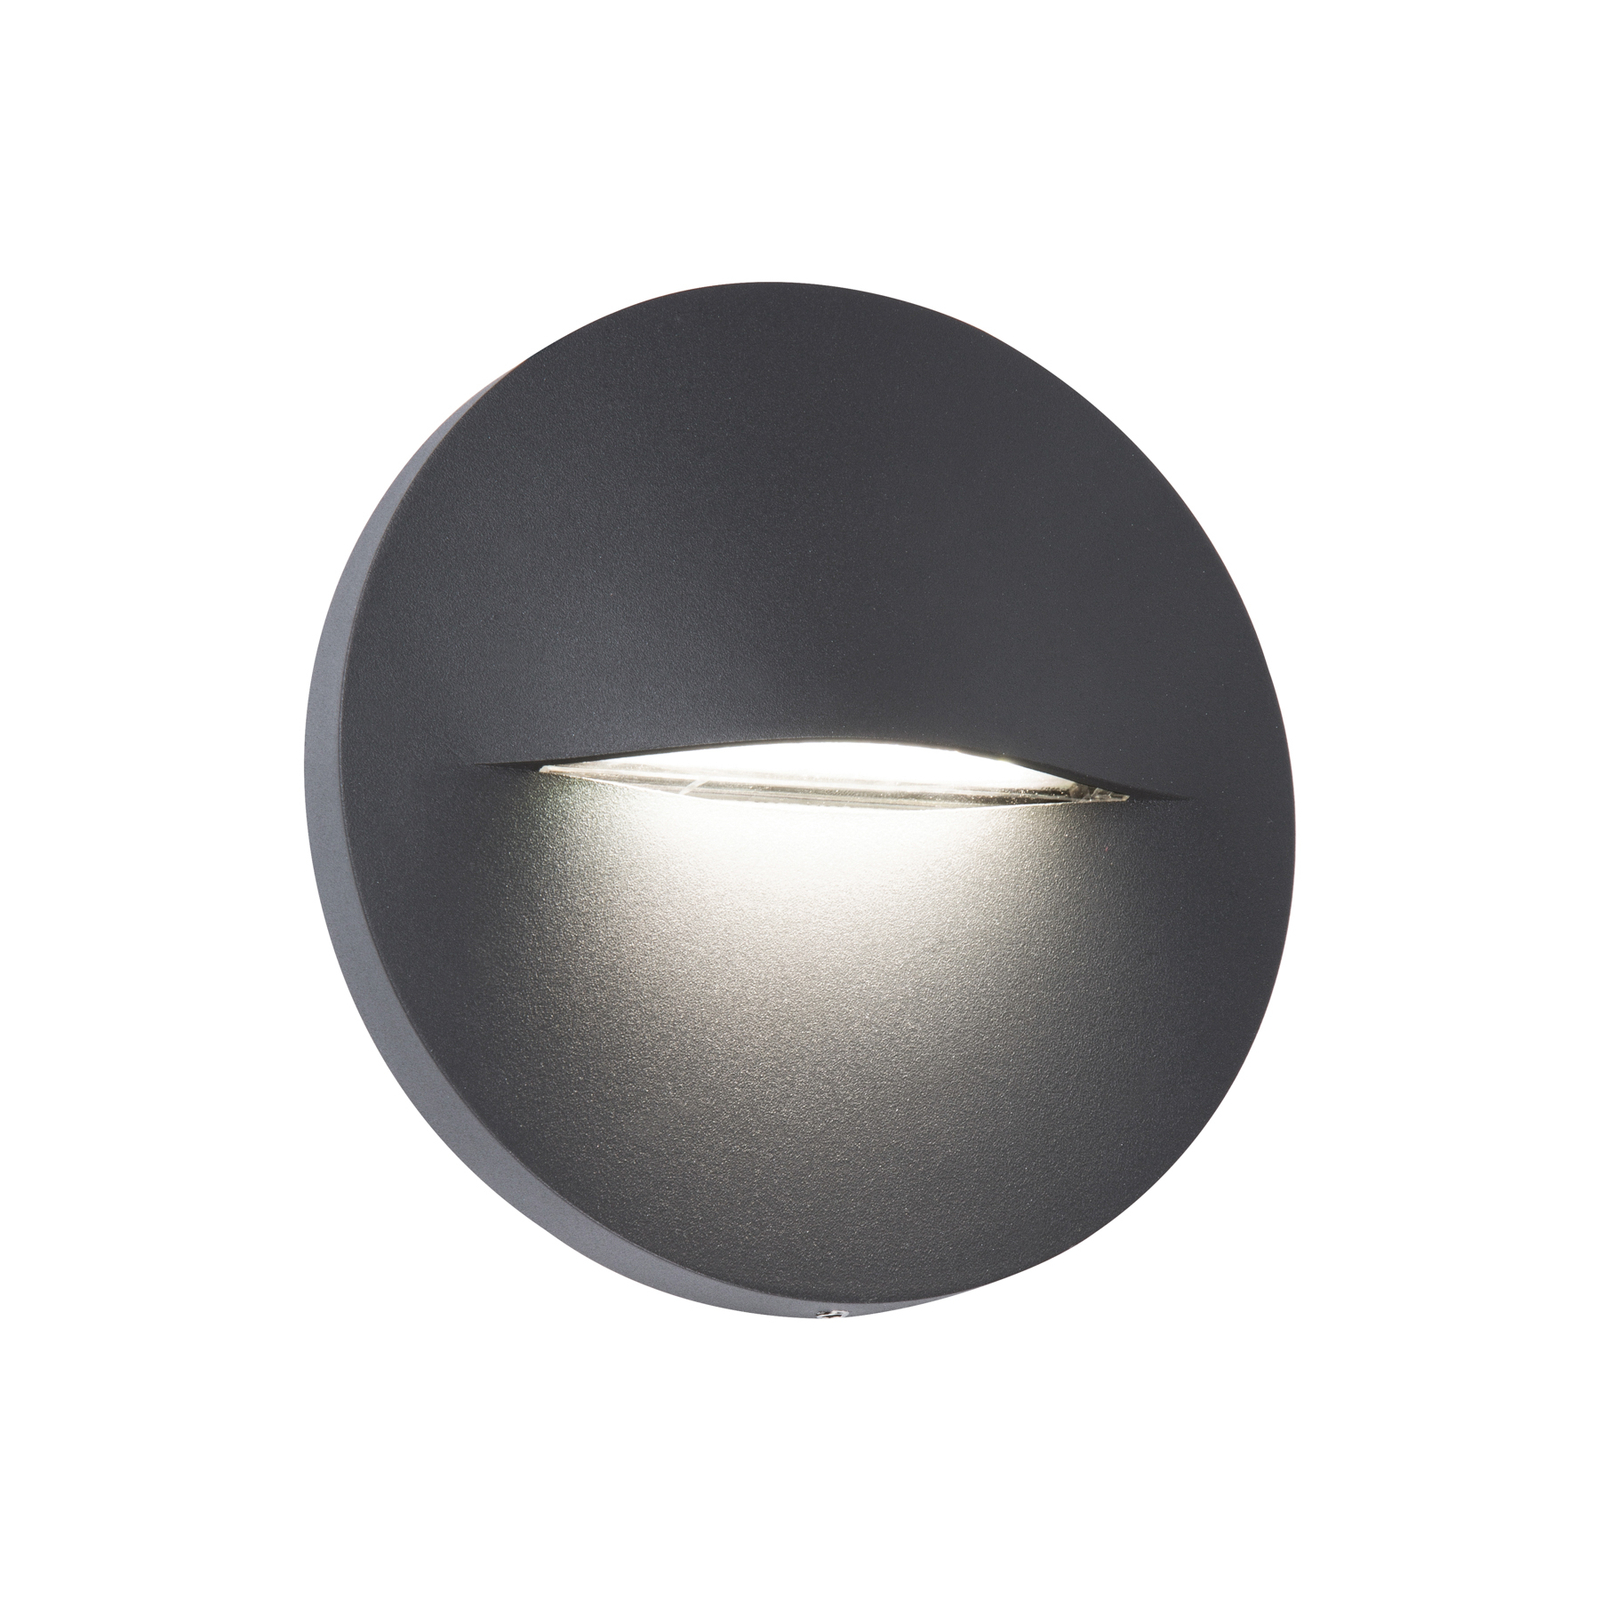 LED lauko sieninis šviestuvas "Vita", tamsiai pilkos spalvos, Ø 14 cm